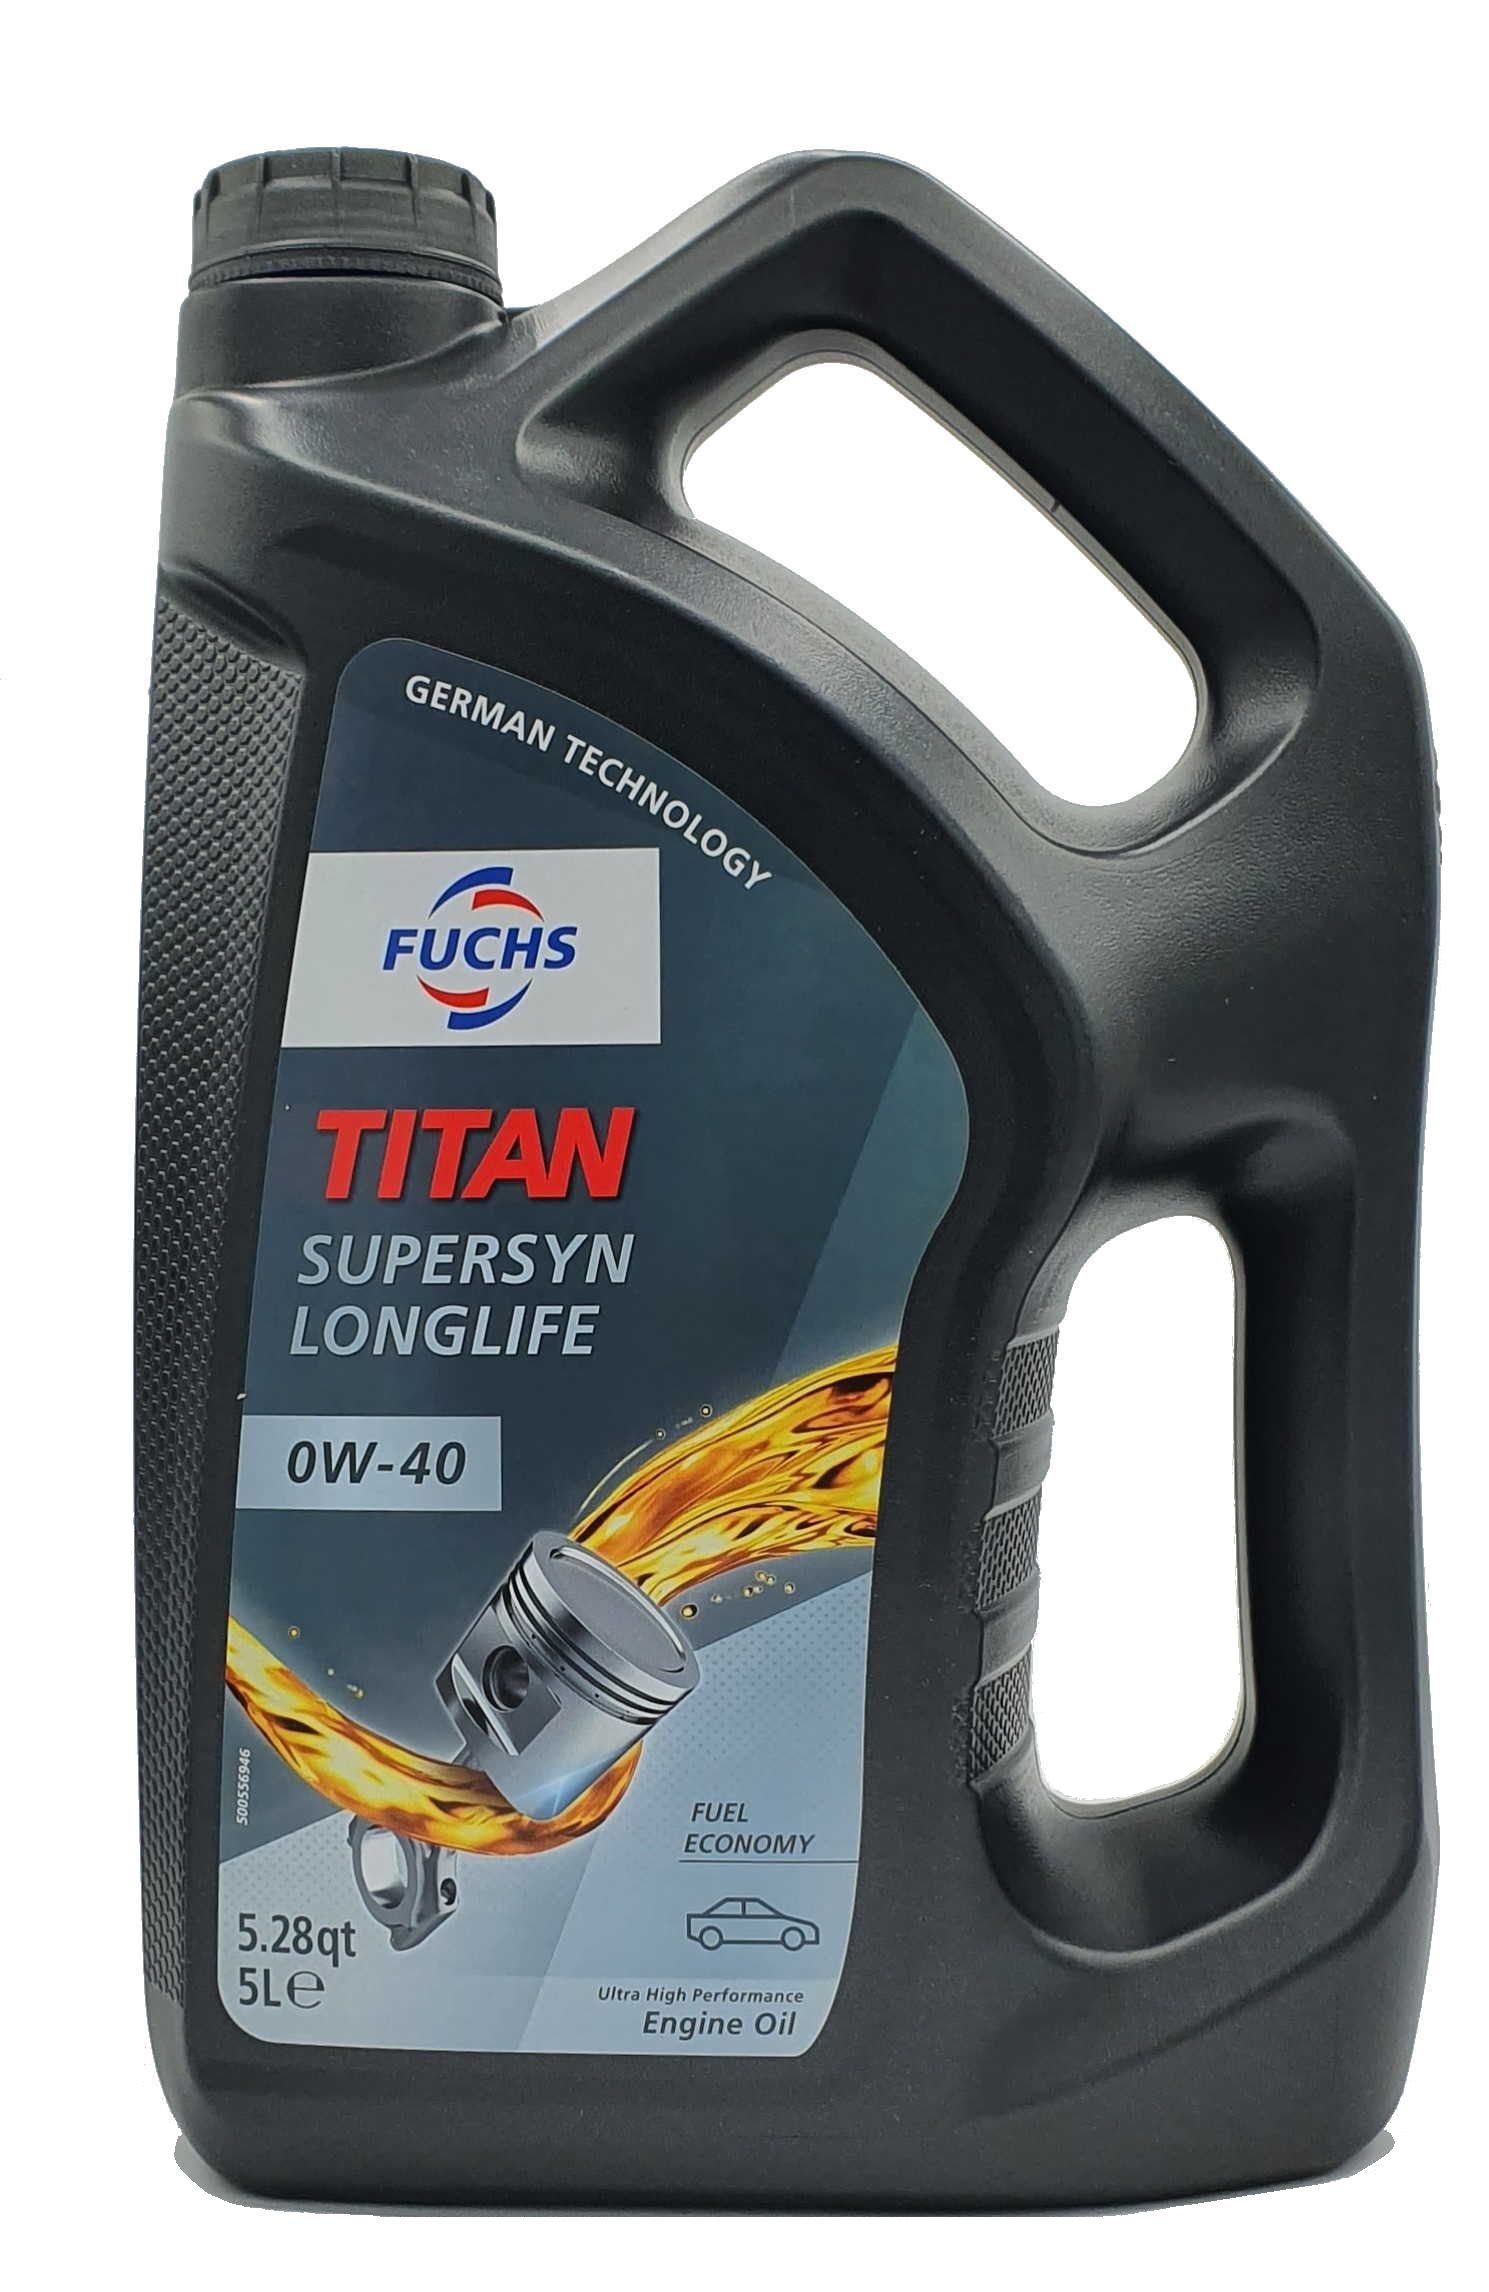 Fuchs Titan Supersyn Longlife 0W-40 5 Liter